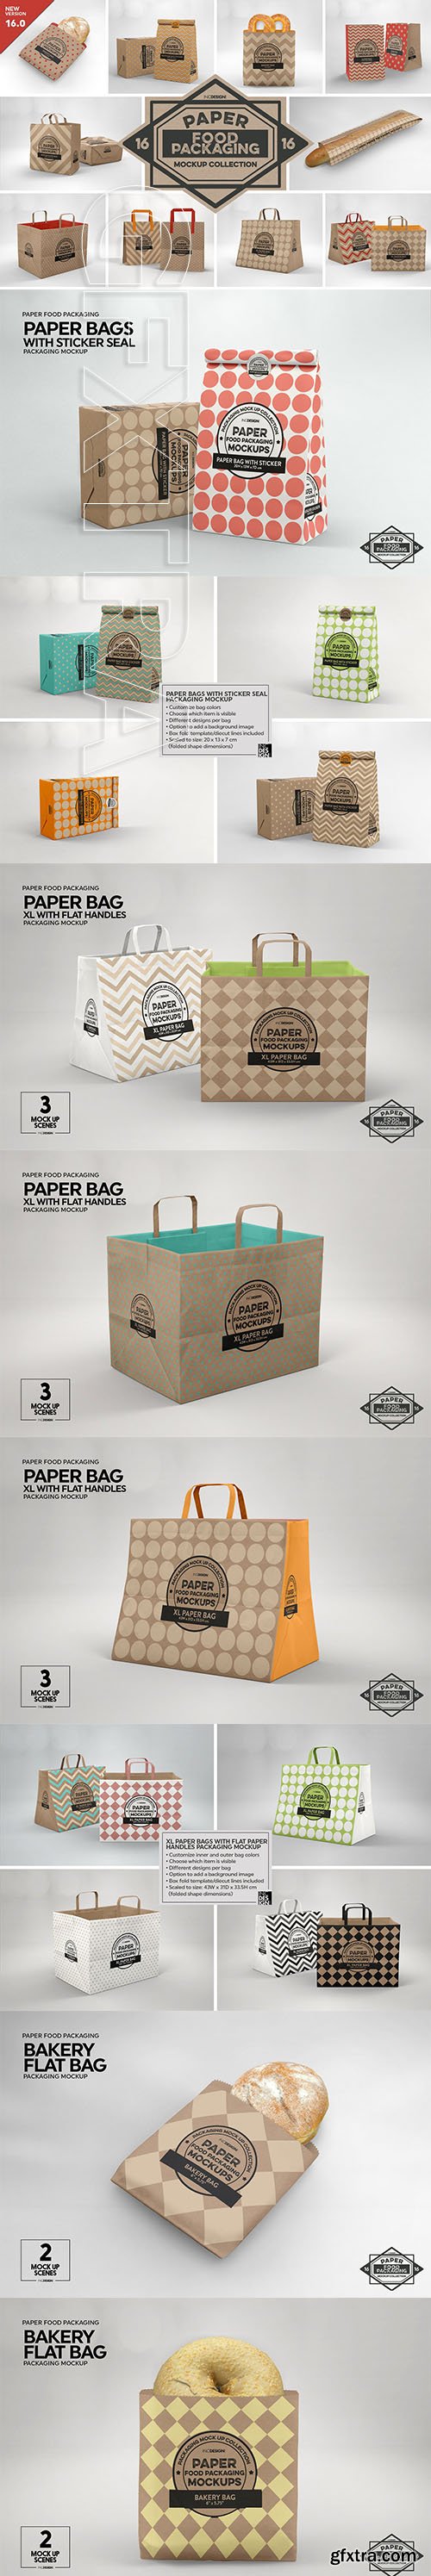 CreativeMarket - VOL. 16 Food Box Packaging Mockup 3916852